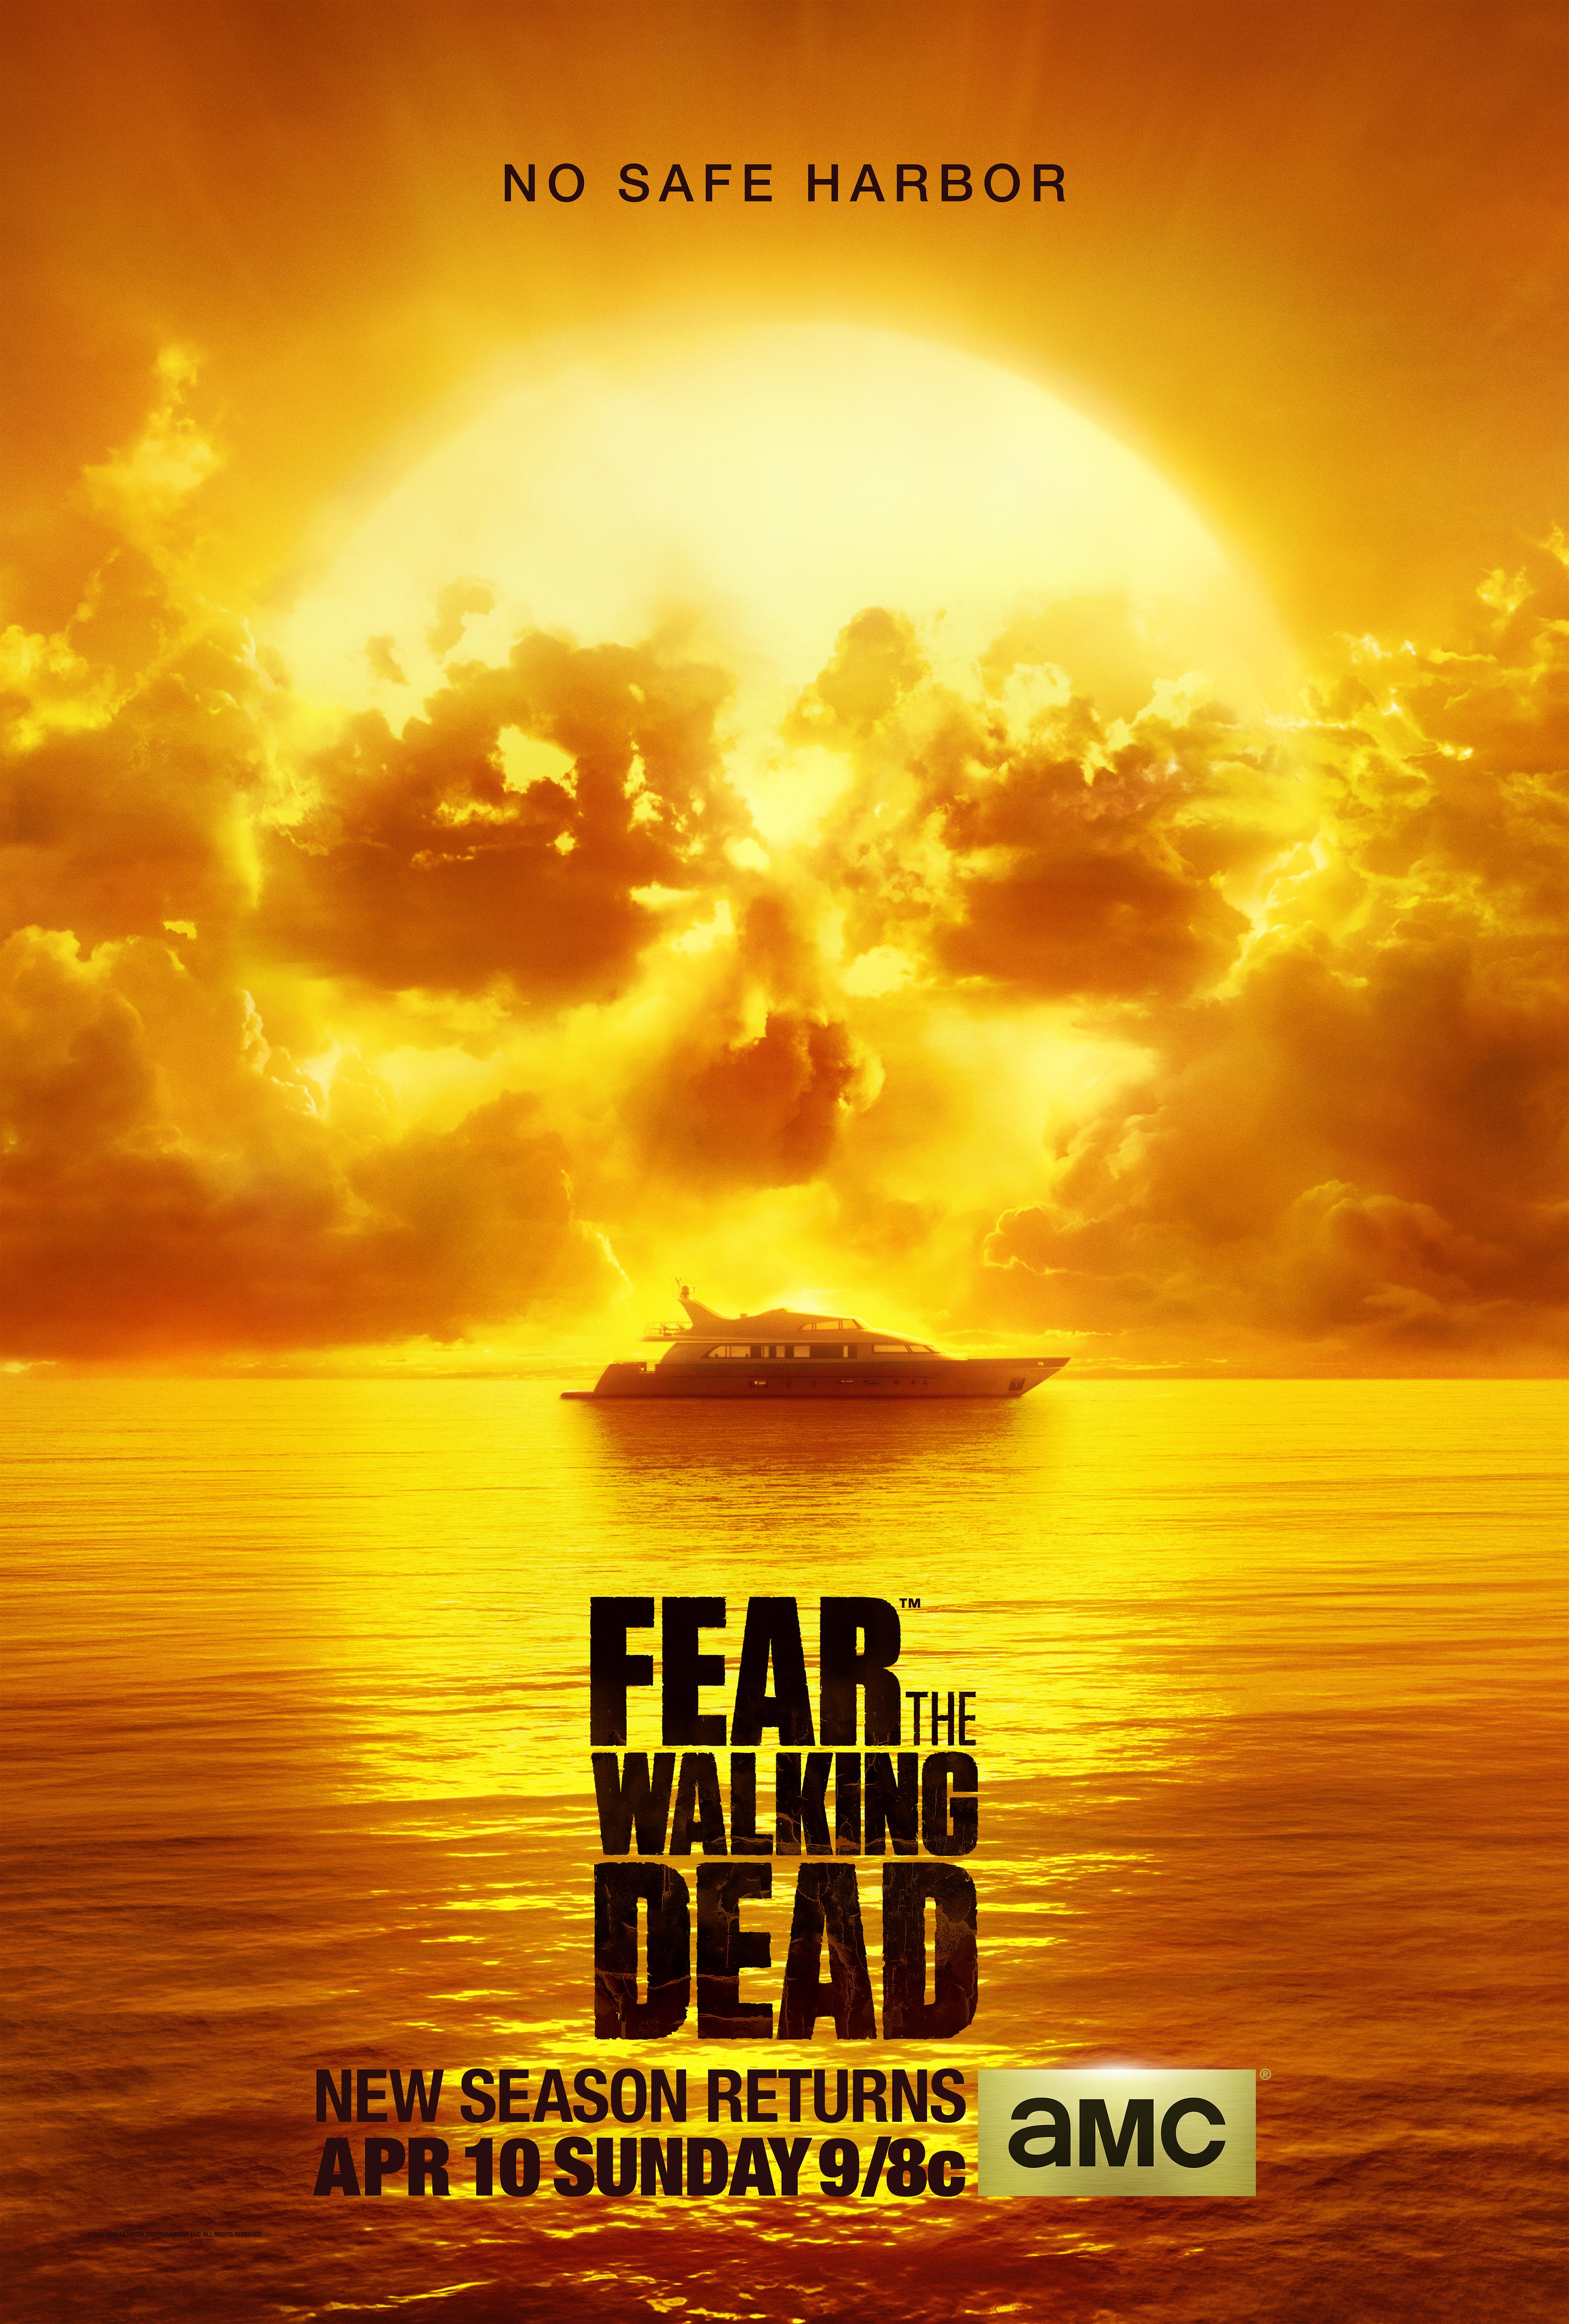 fear the walking dead free download season 2